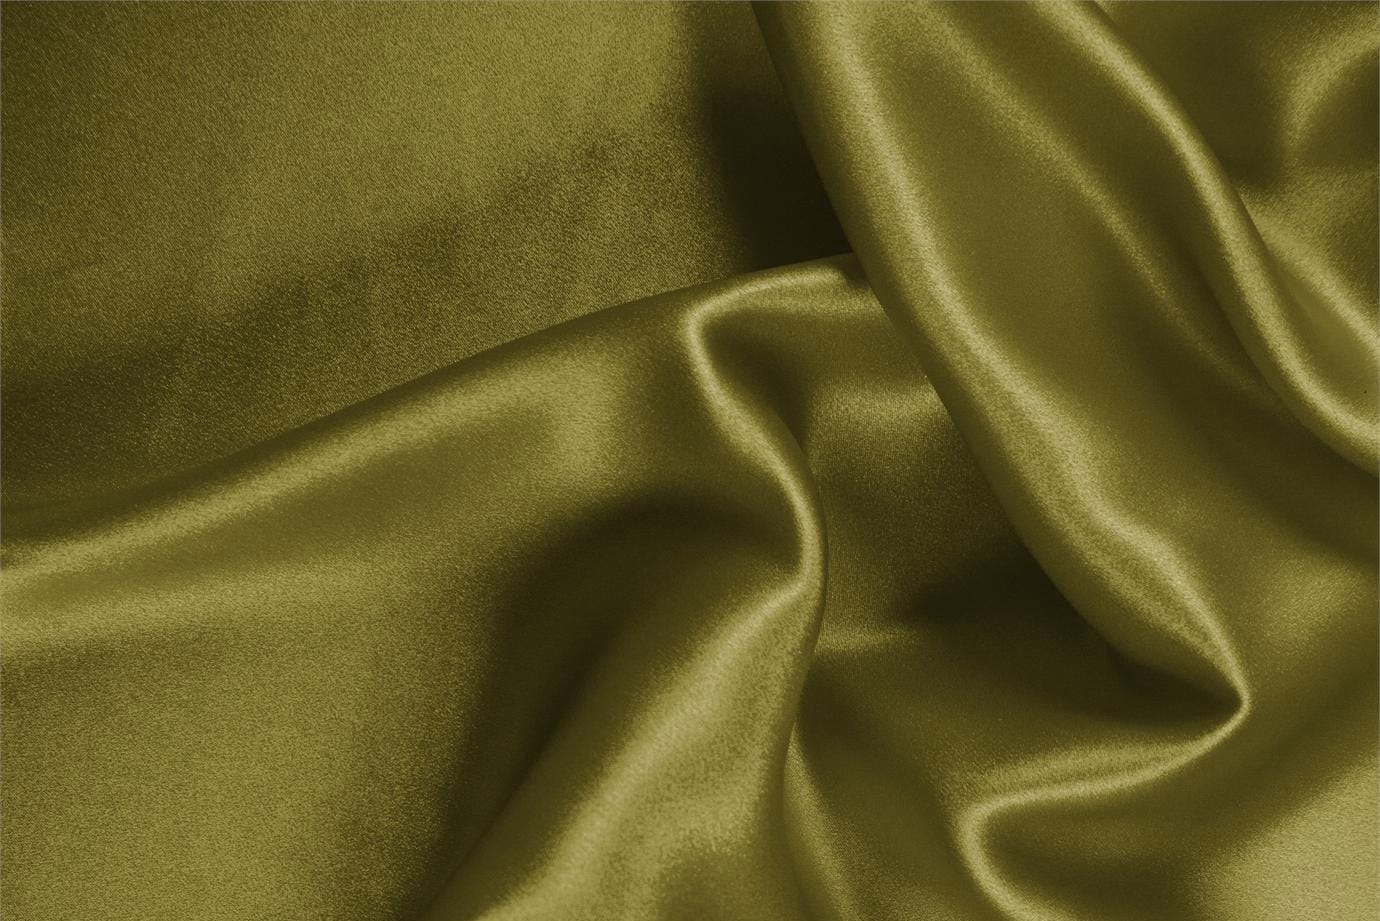 Tissu Crêpe Satin Vert feuille en Soie pour vêtements